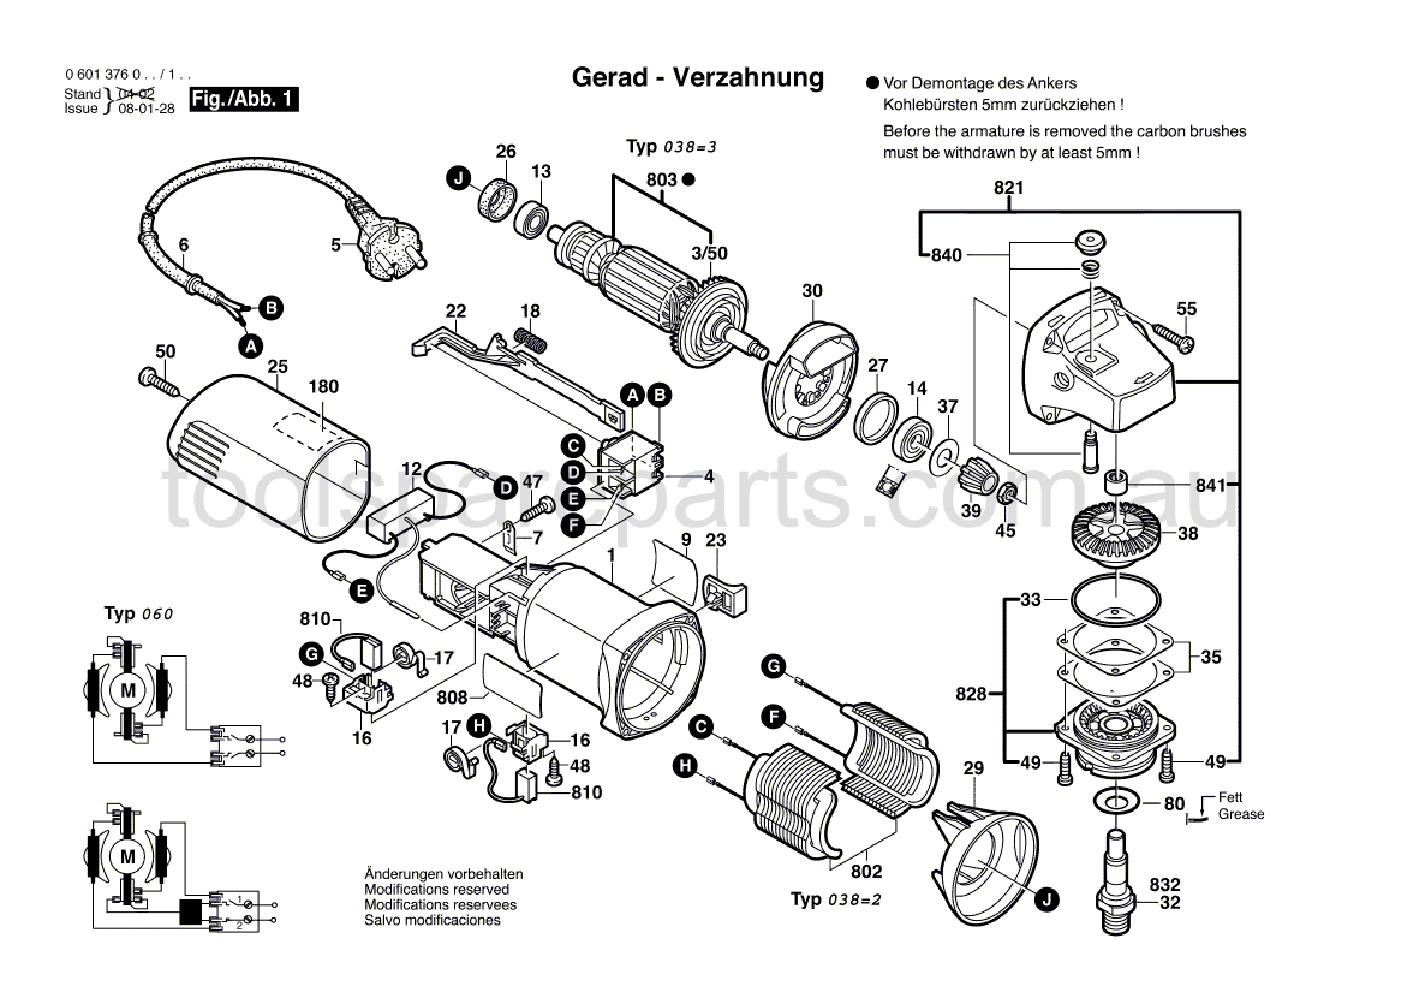 Bosch GWS 5-100 0601376037  Diagram 1